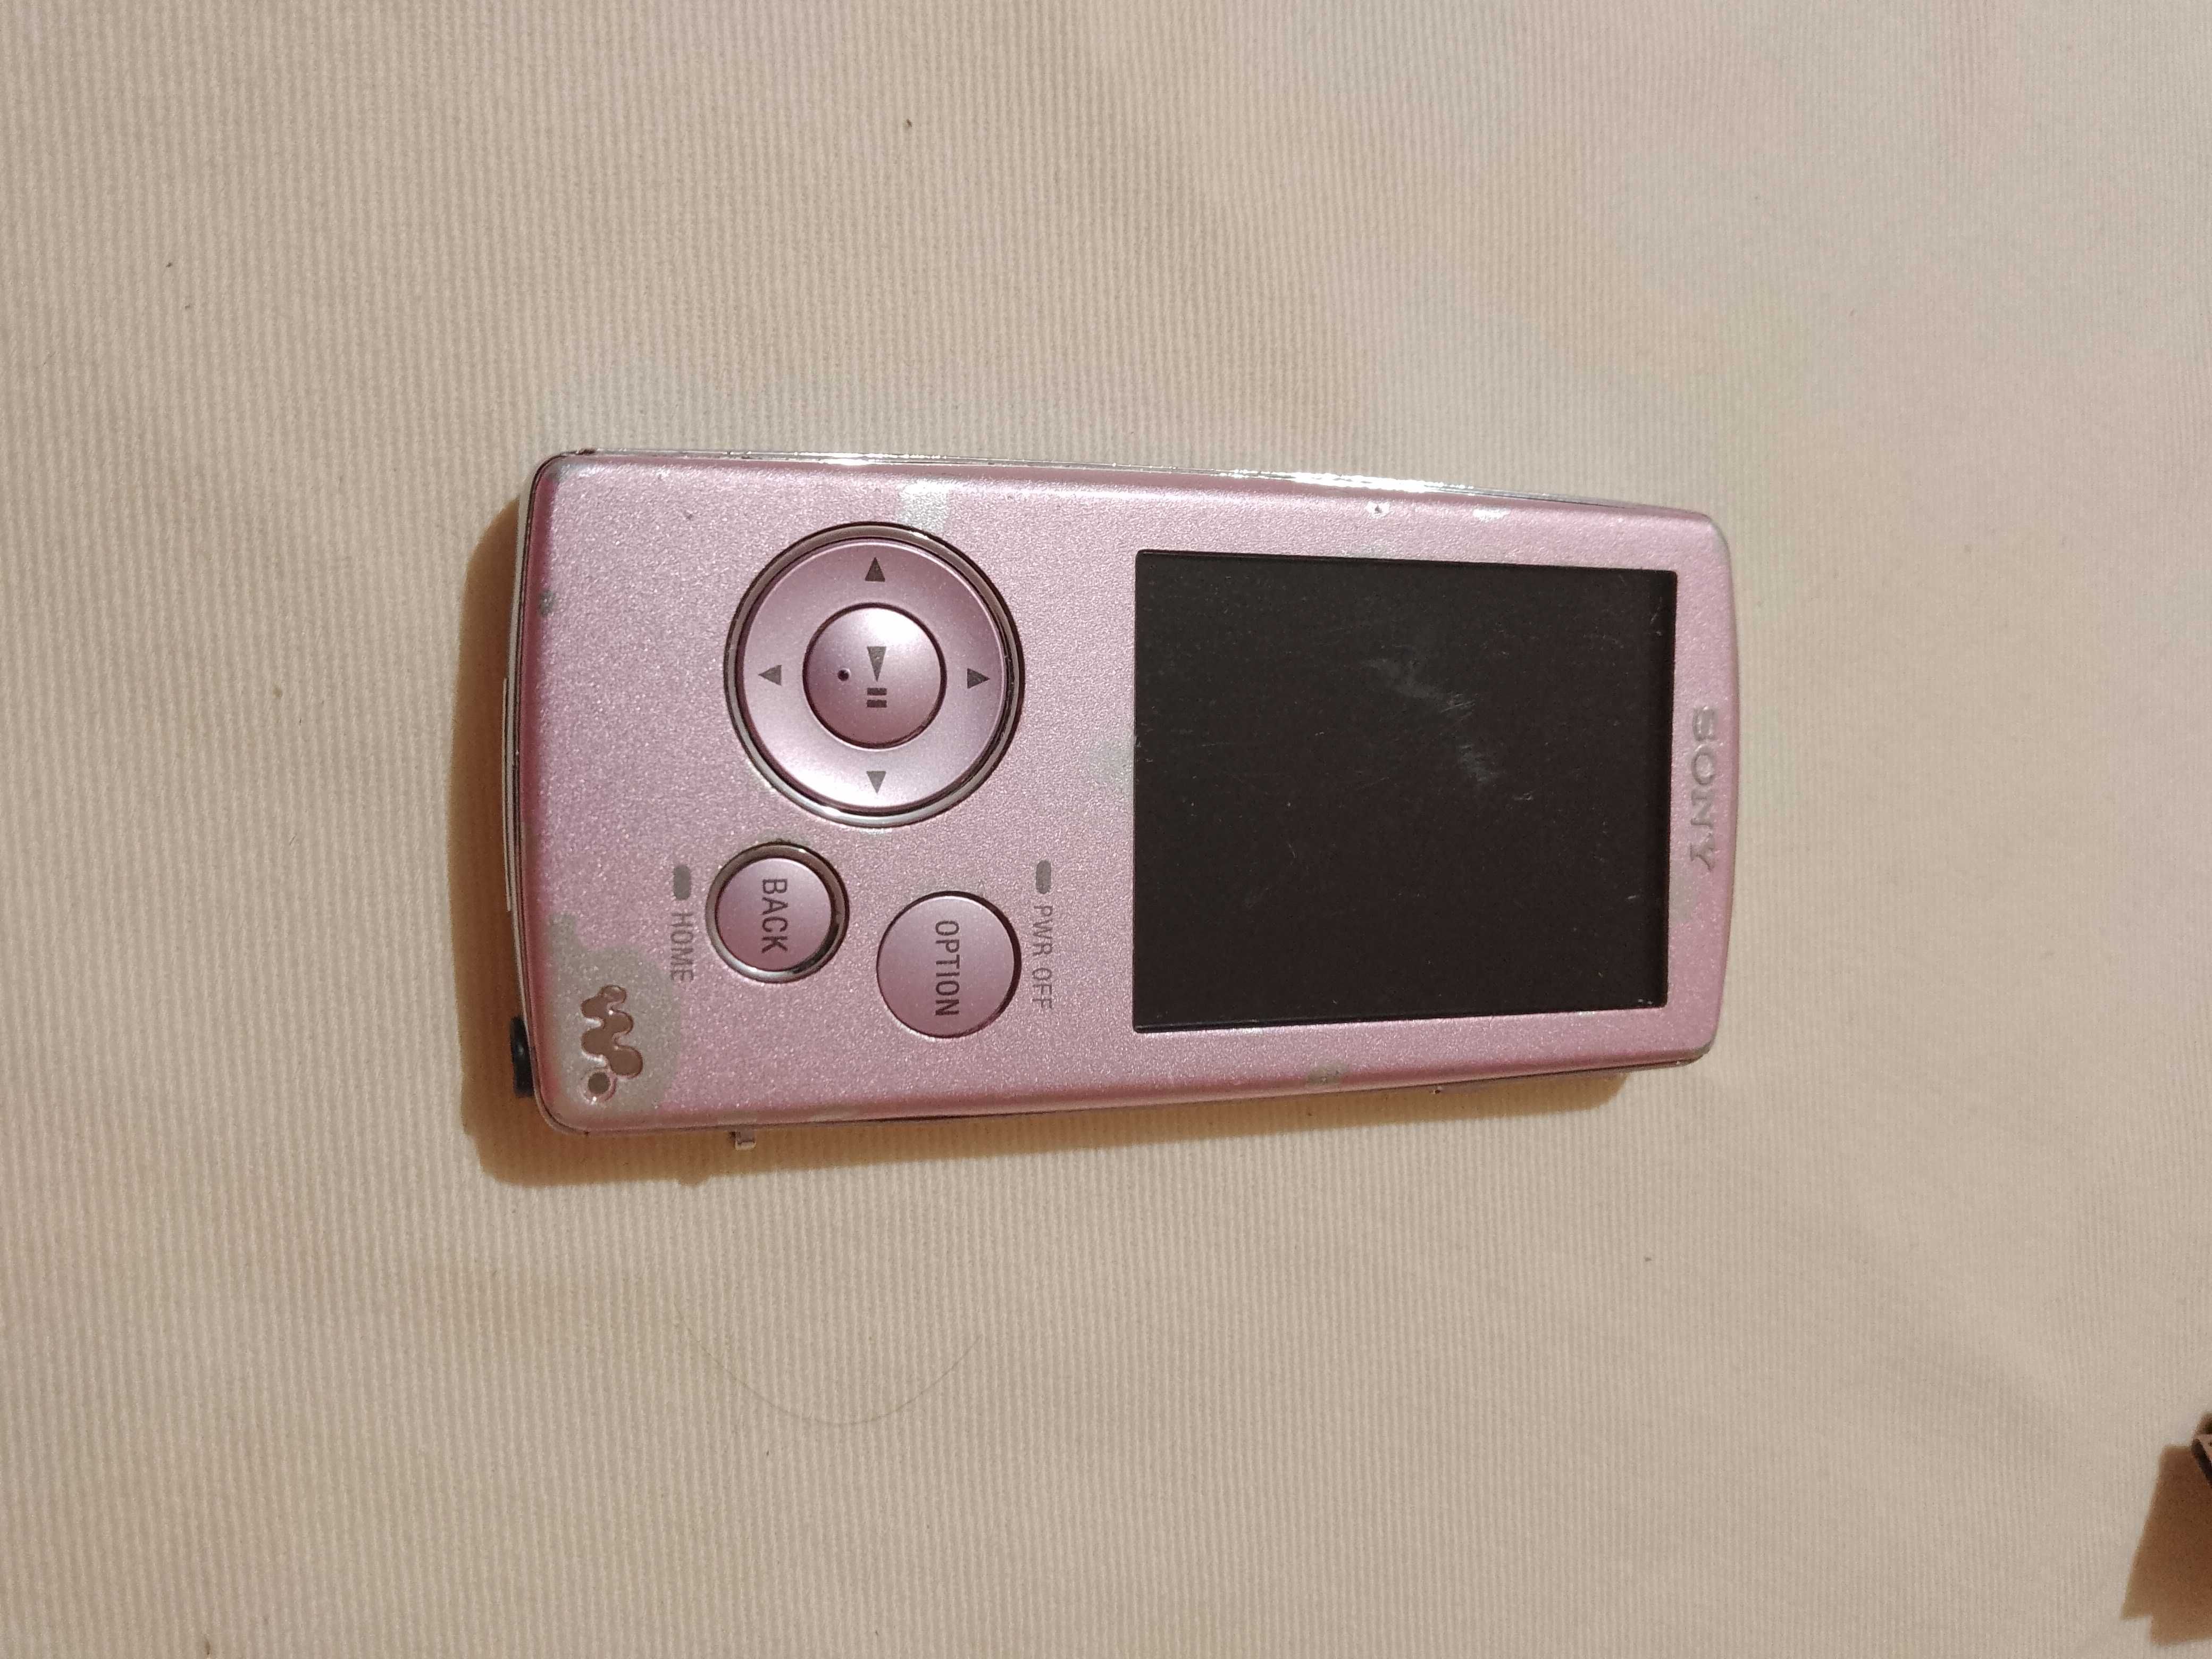 Sony NWZ-A816 4GB Walkman® video/MP3 player